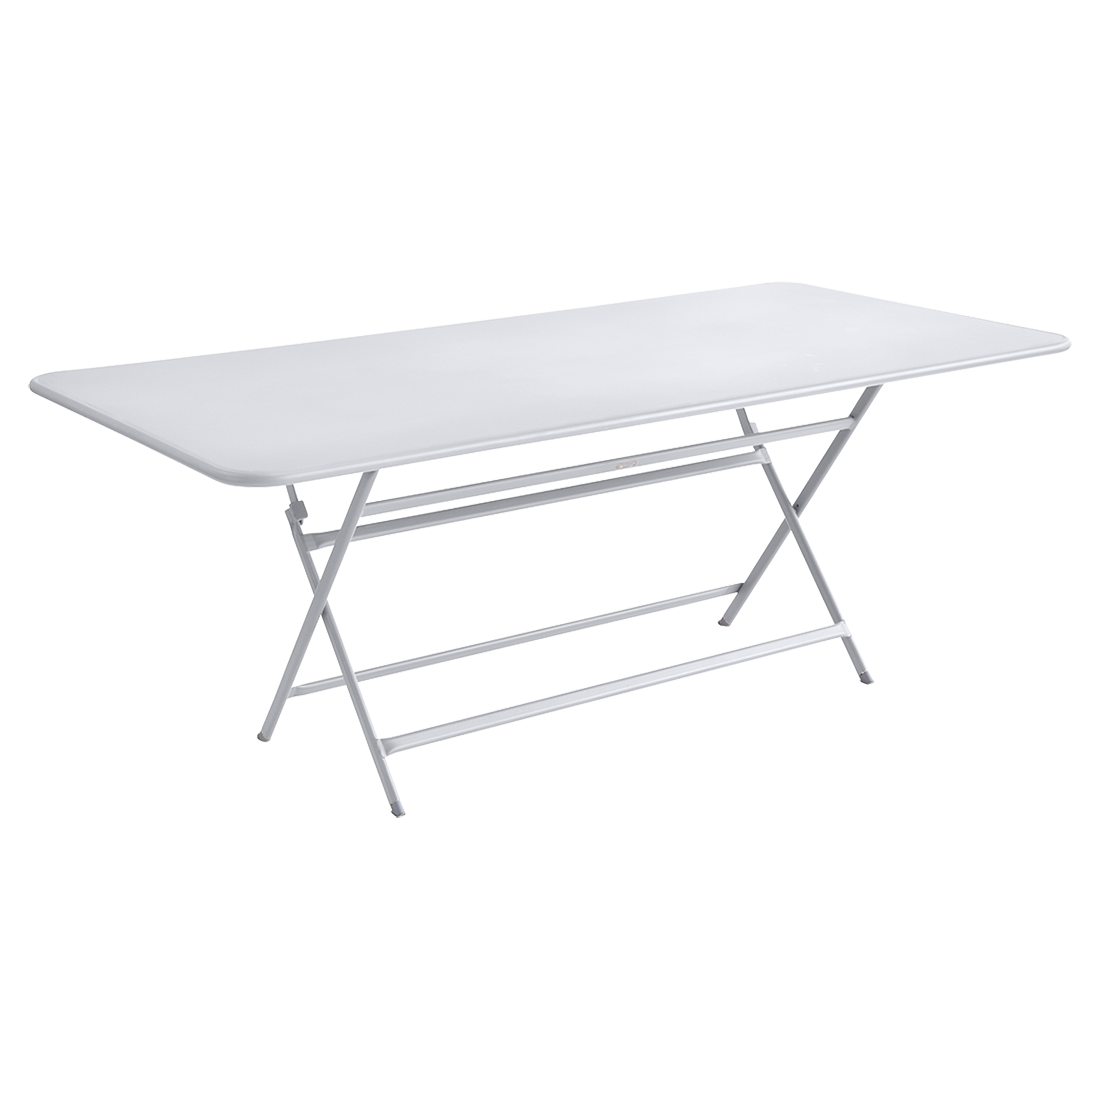 table de jardin pliante, table metal, table metal 8 personnes, table de jardin blanche, table metal blanche